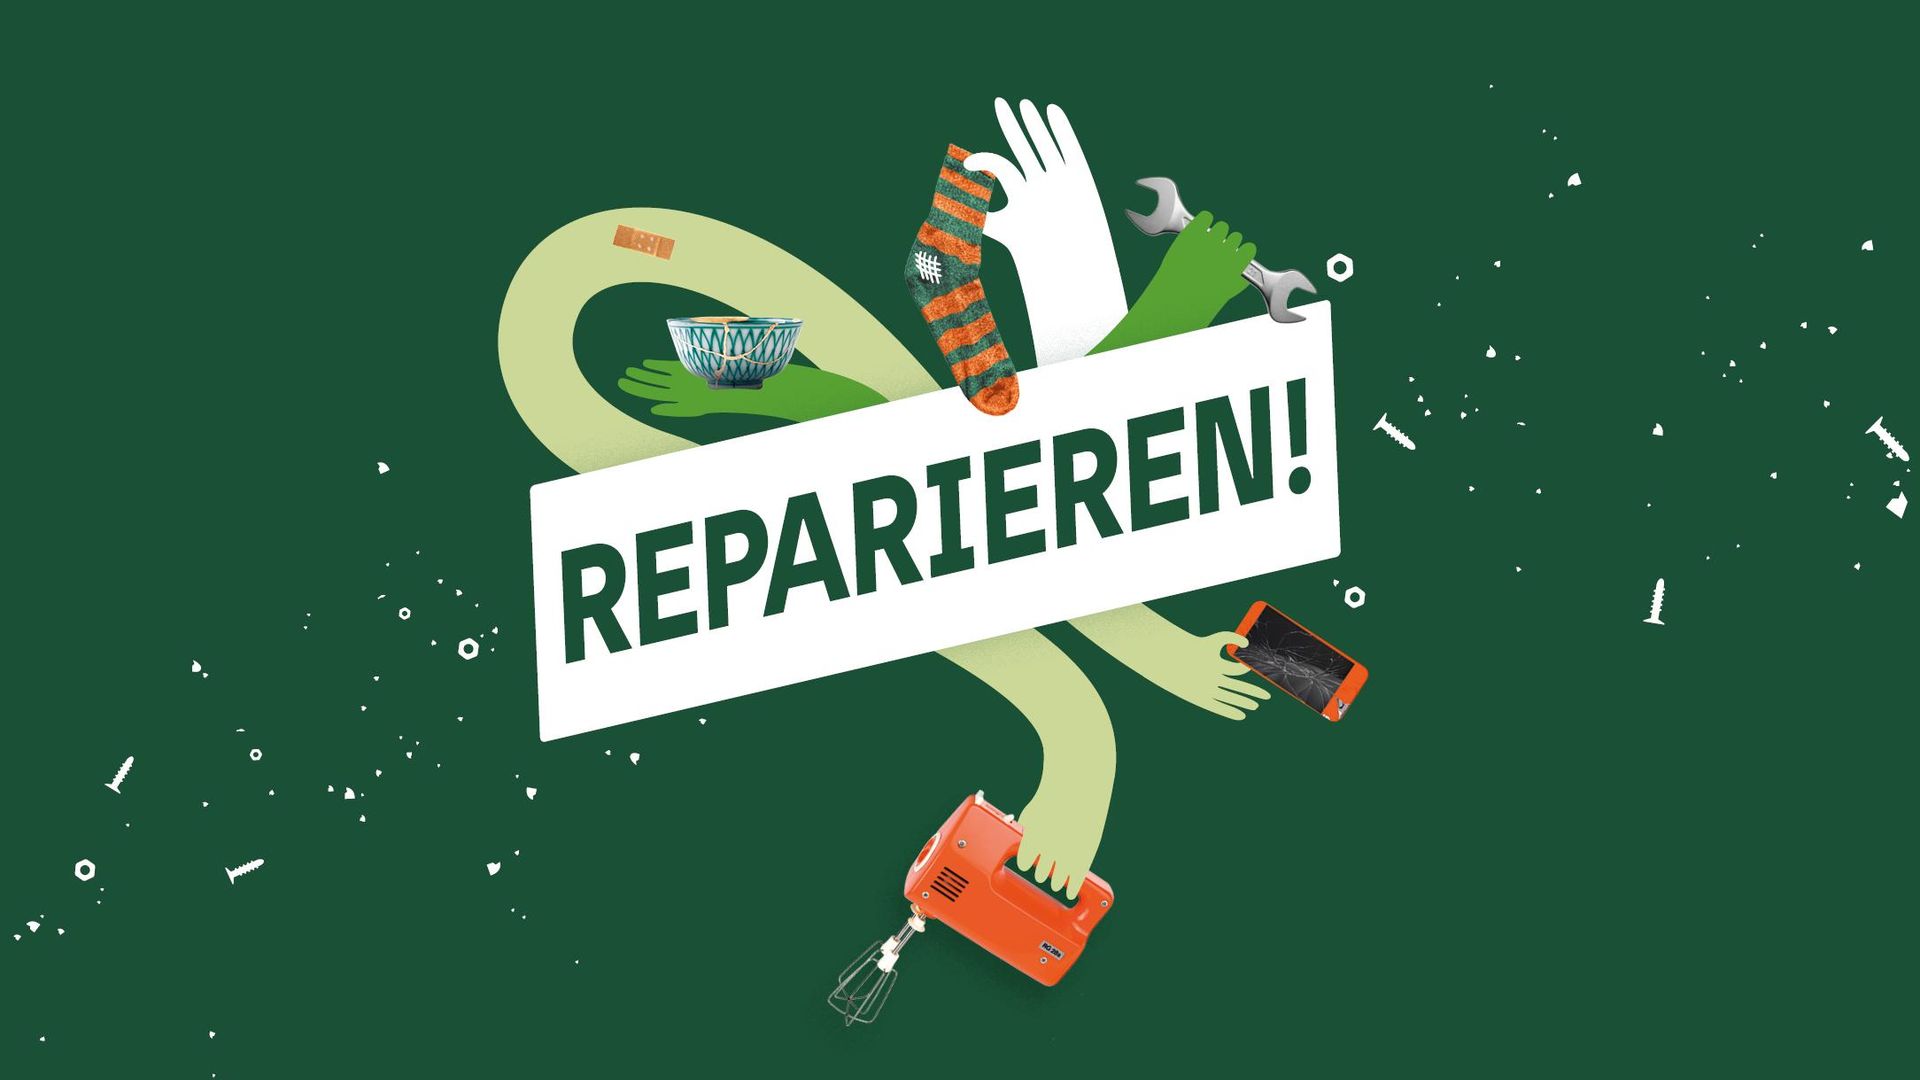 Schriftzug "Reparieren!", dahinter Hände, die diverse Objekte halten vor grünem Hintergrund.